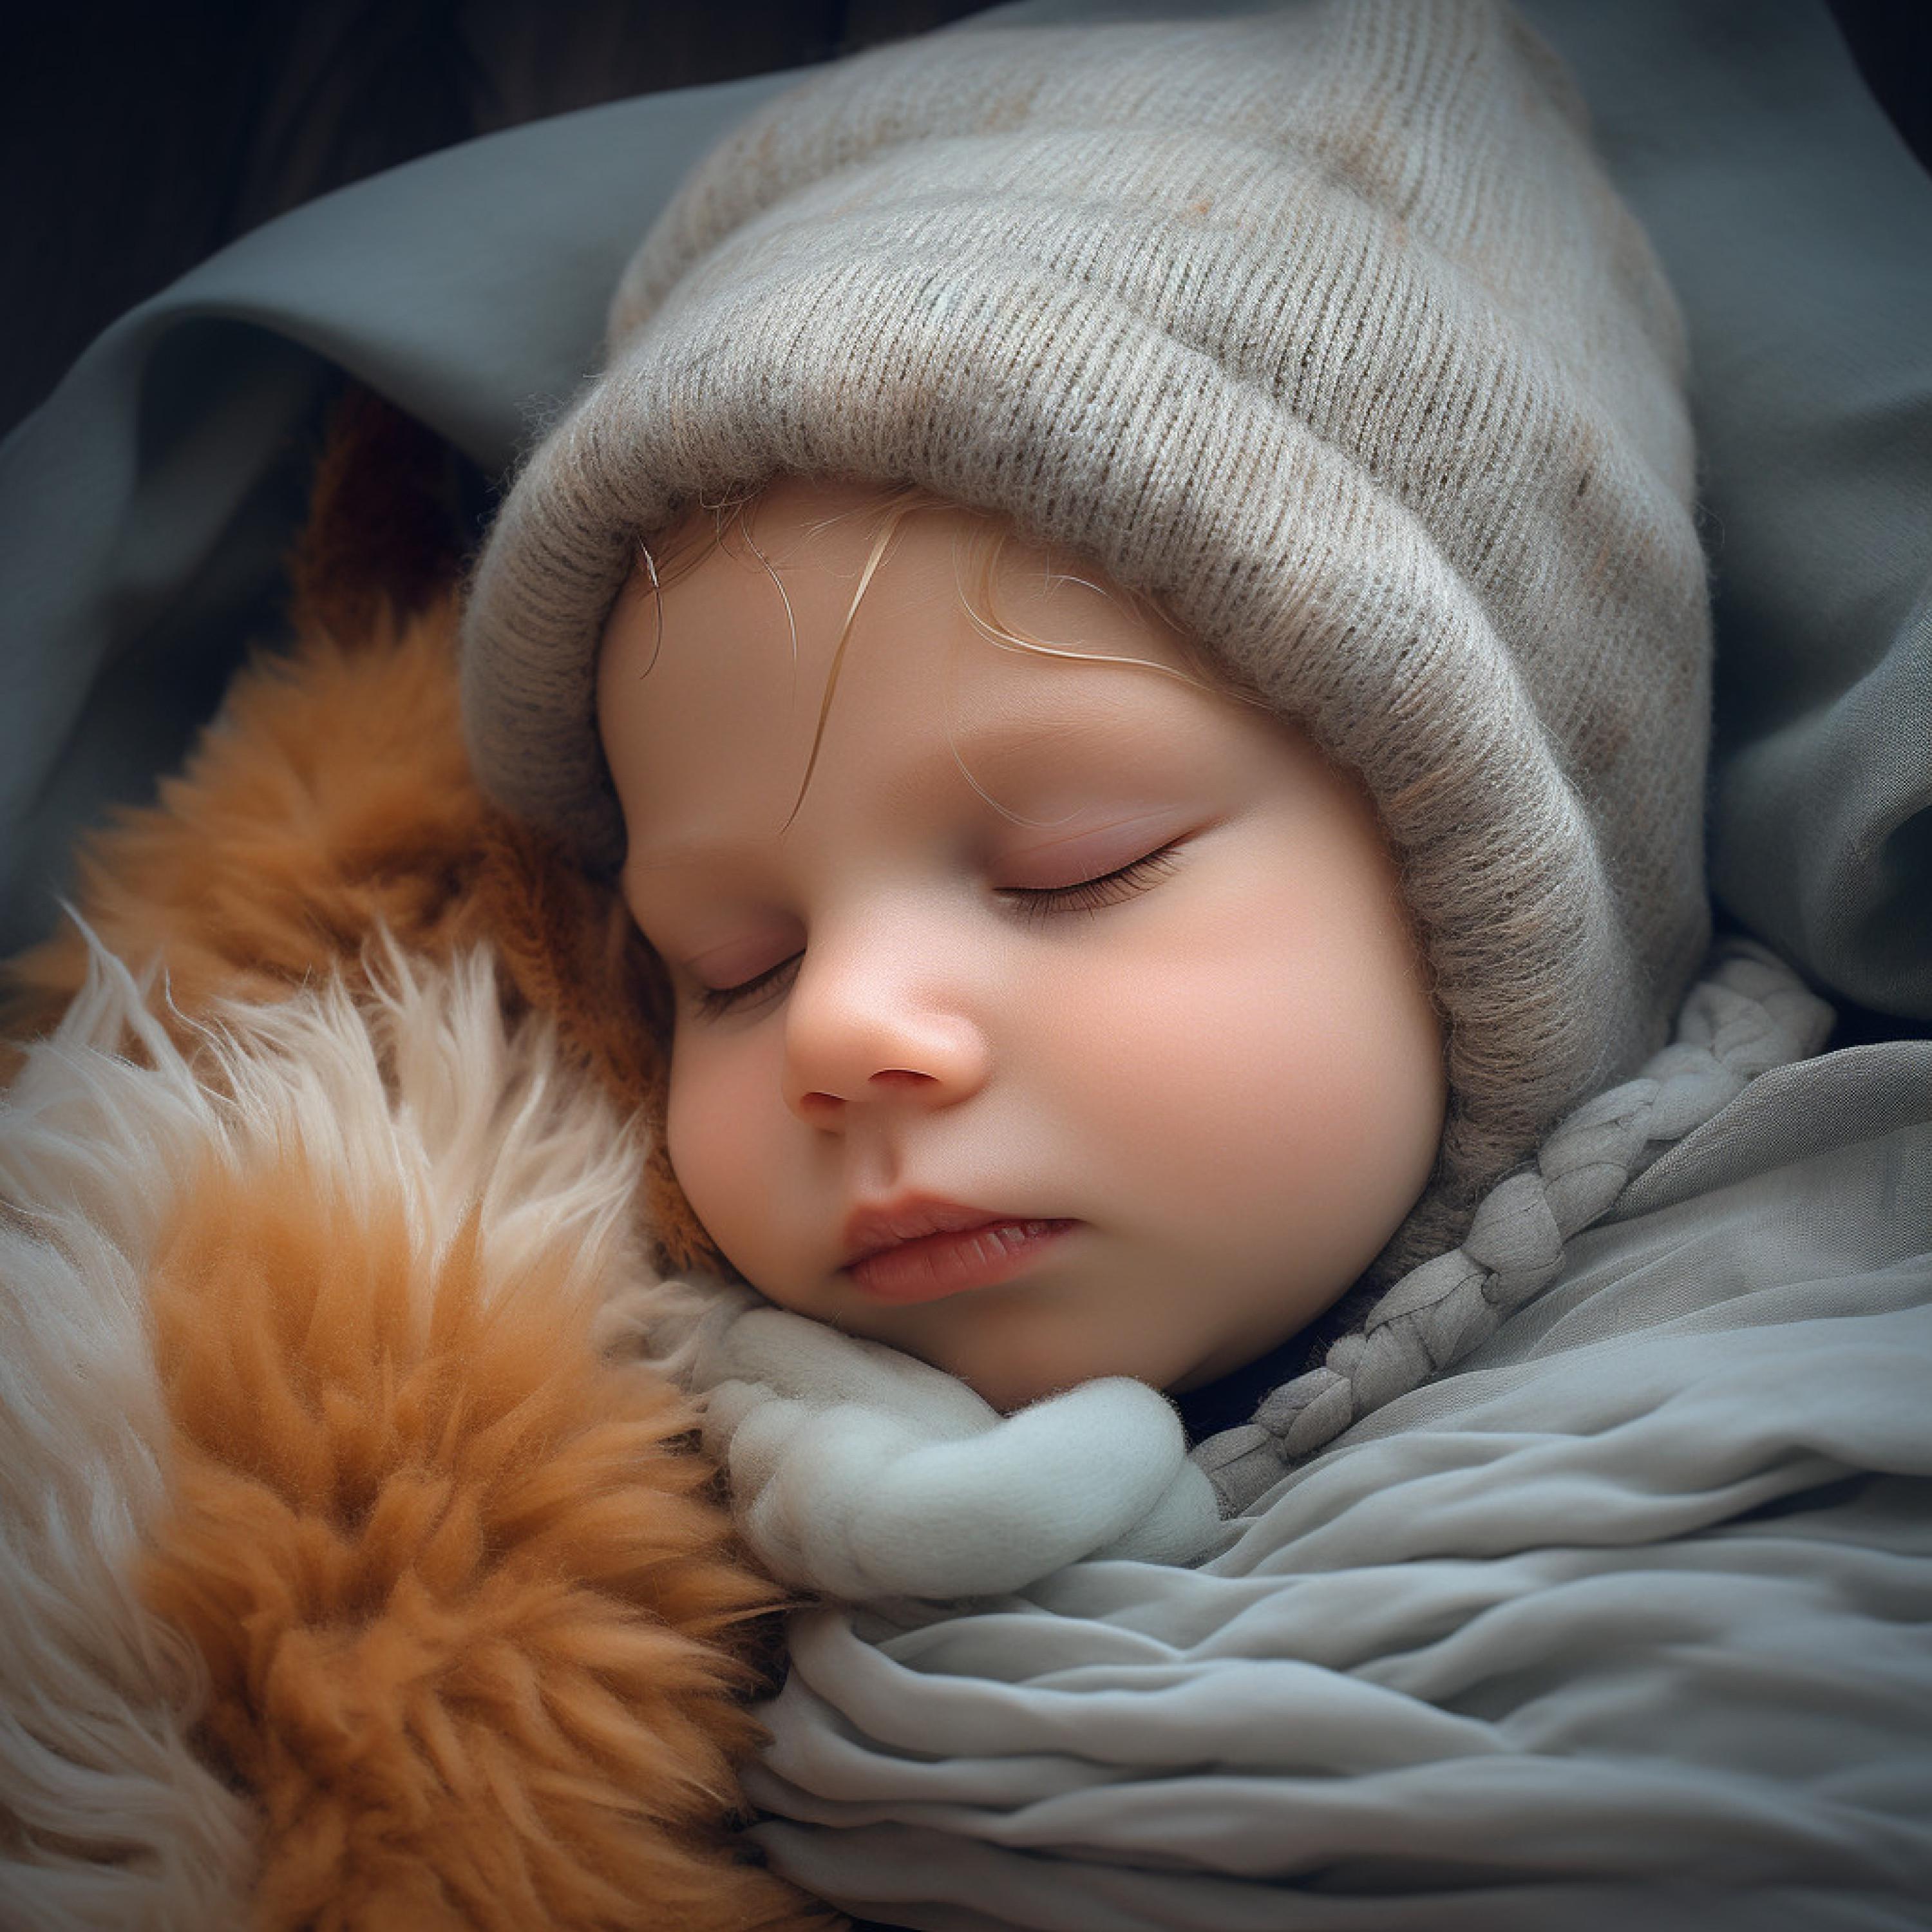 Rock Your Babies - Gentle Night Breeze in Lullaby